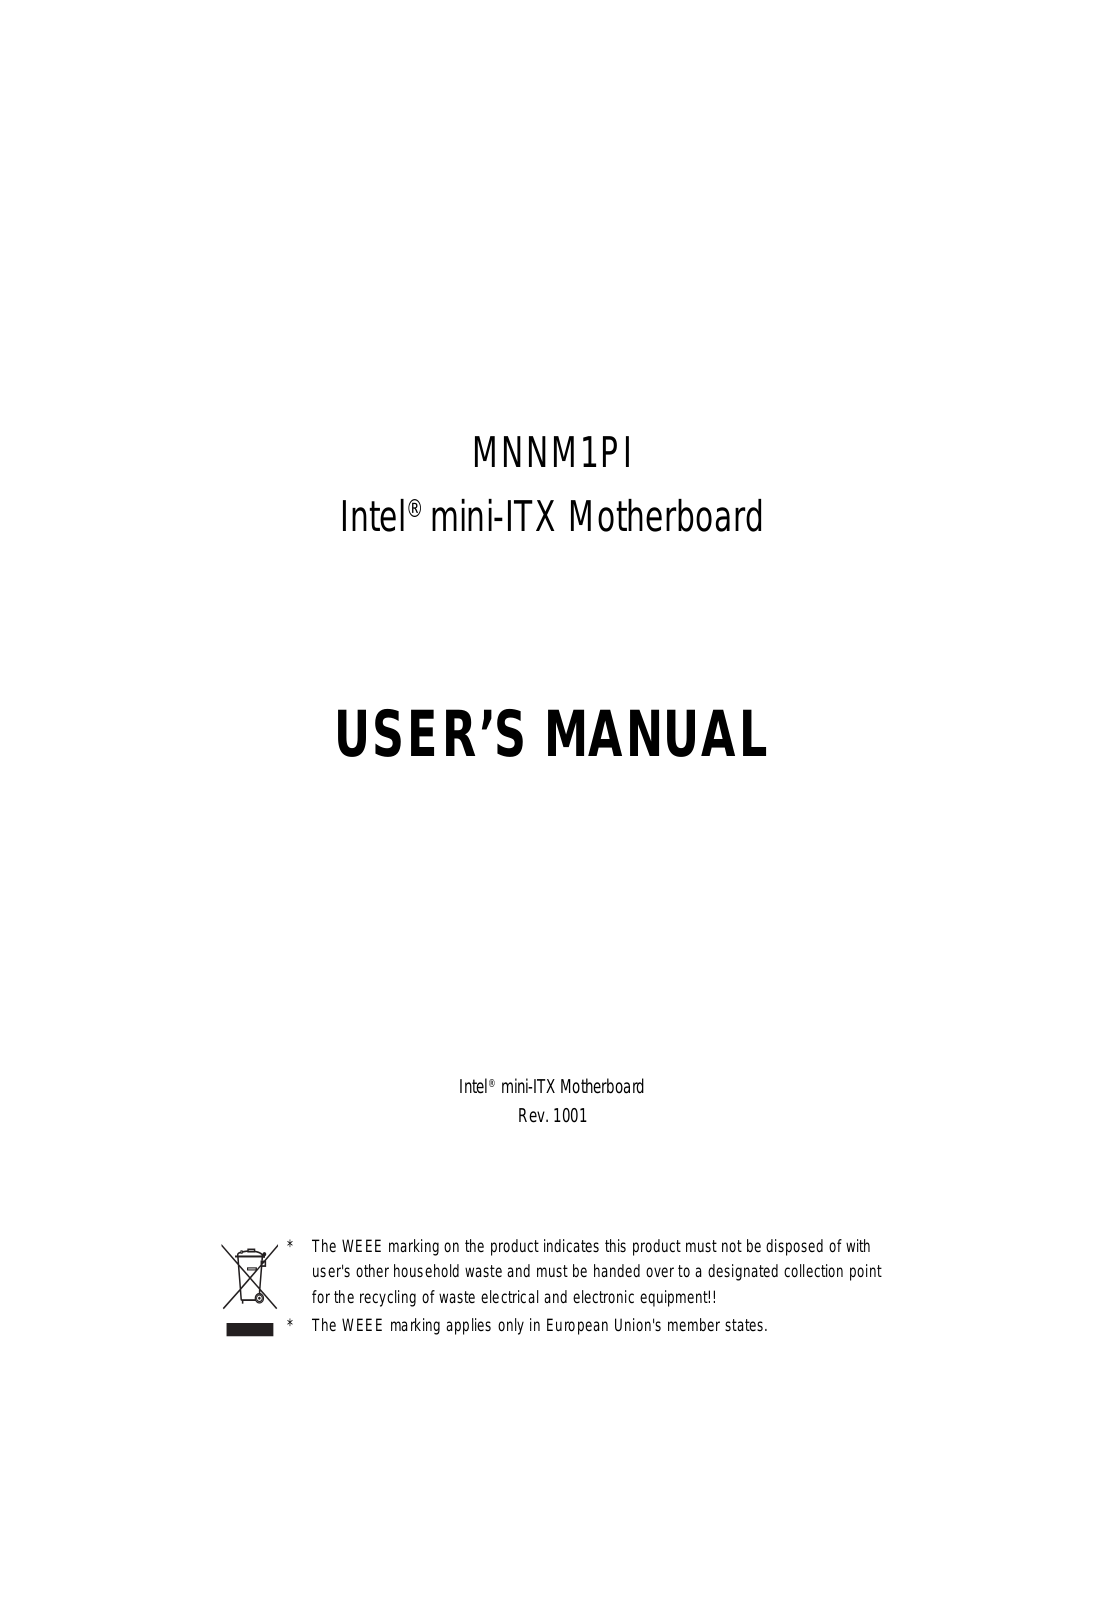 GIGABYTE MNNM1PI Owner's Manual